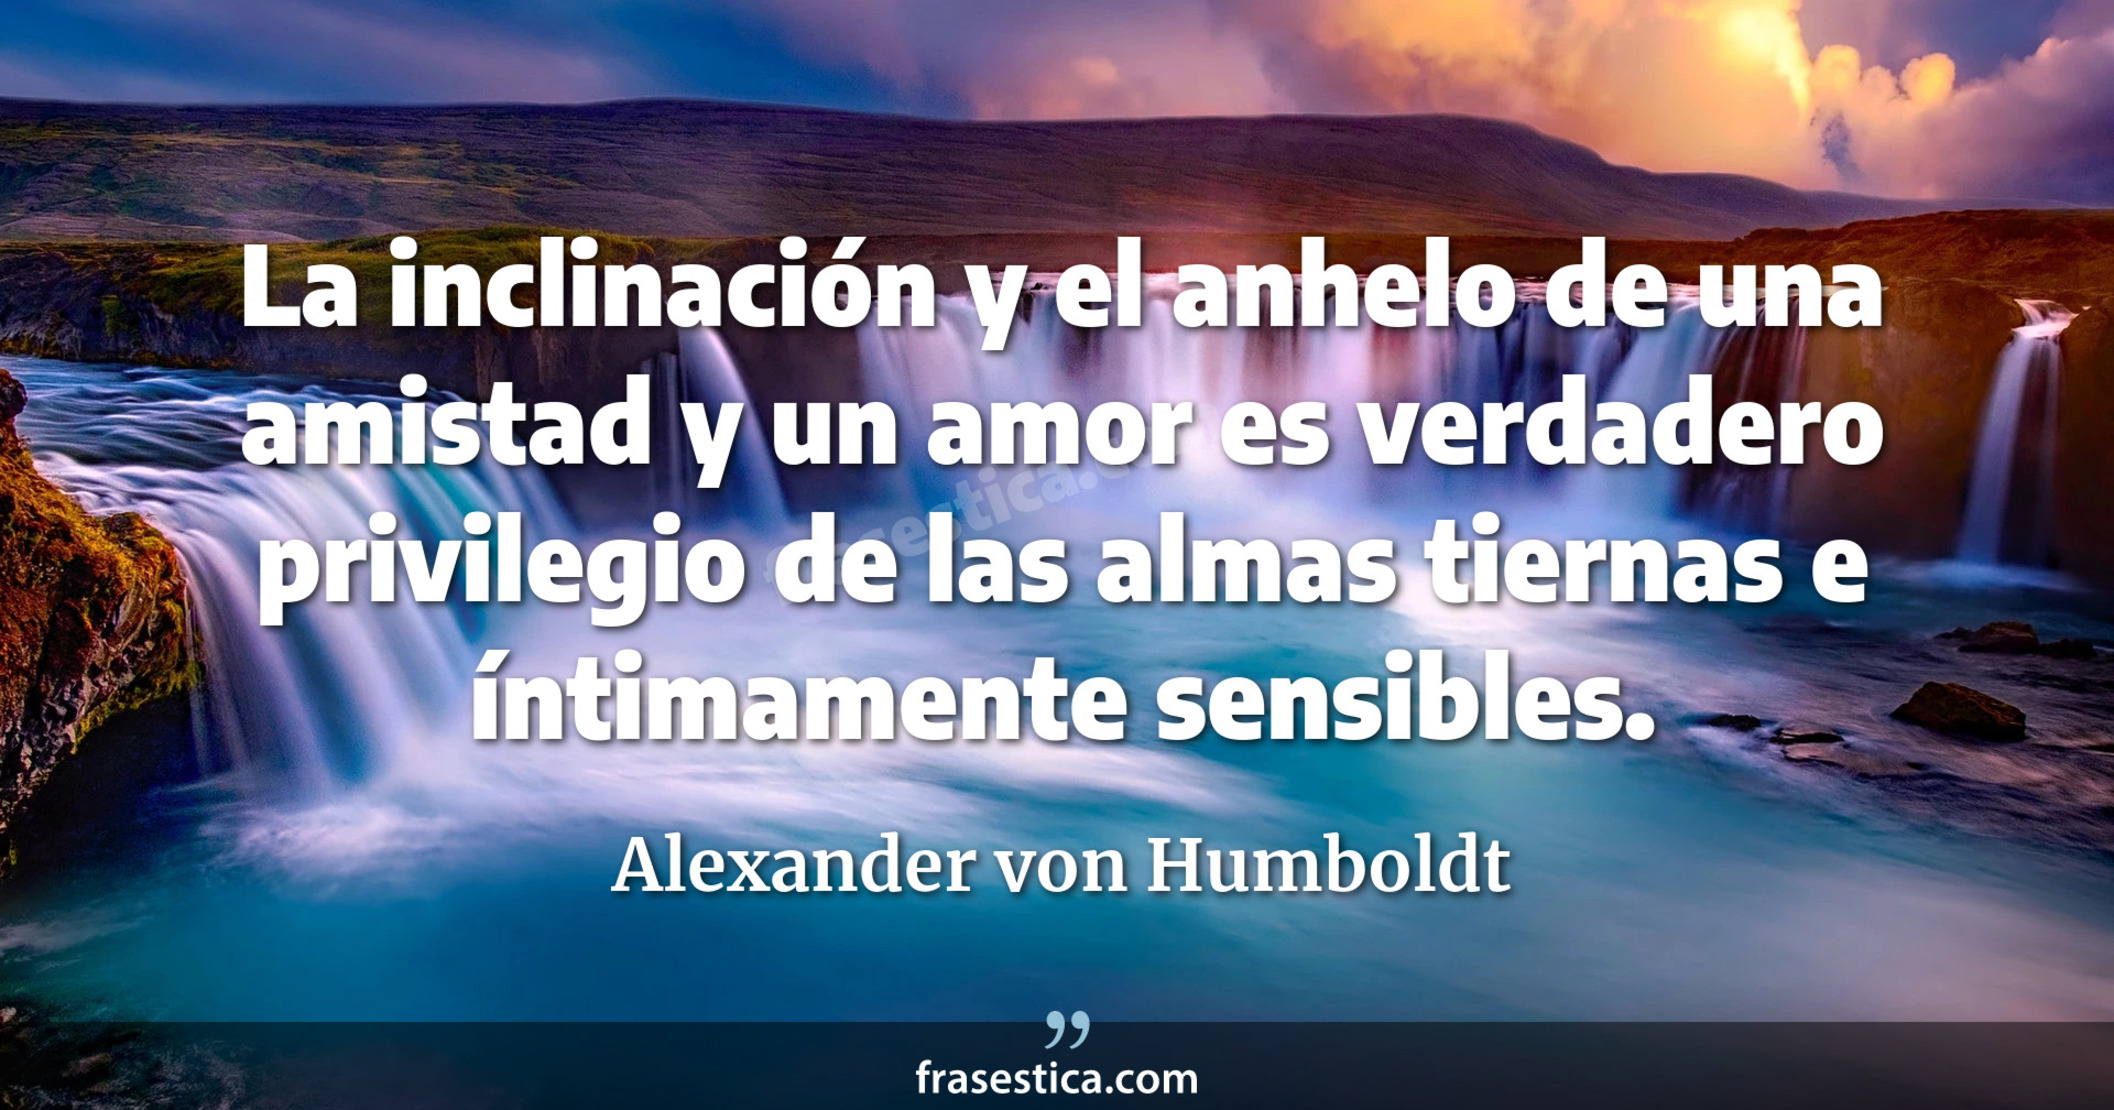 La inclinación y el anhelo de una amistad y un amor es verdadero privilegio de las almas tiernas e íntimamente sensibles. - Alexander von Humboldt